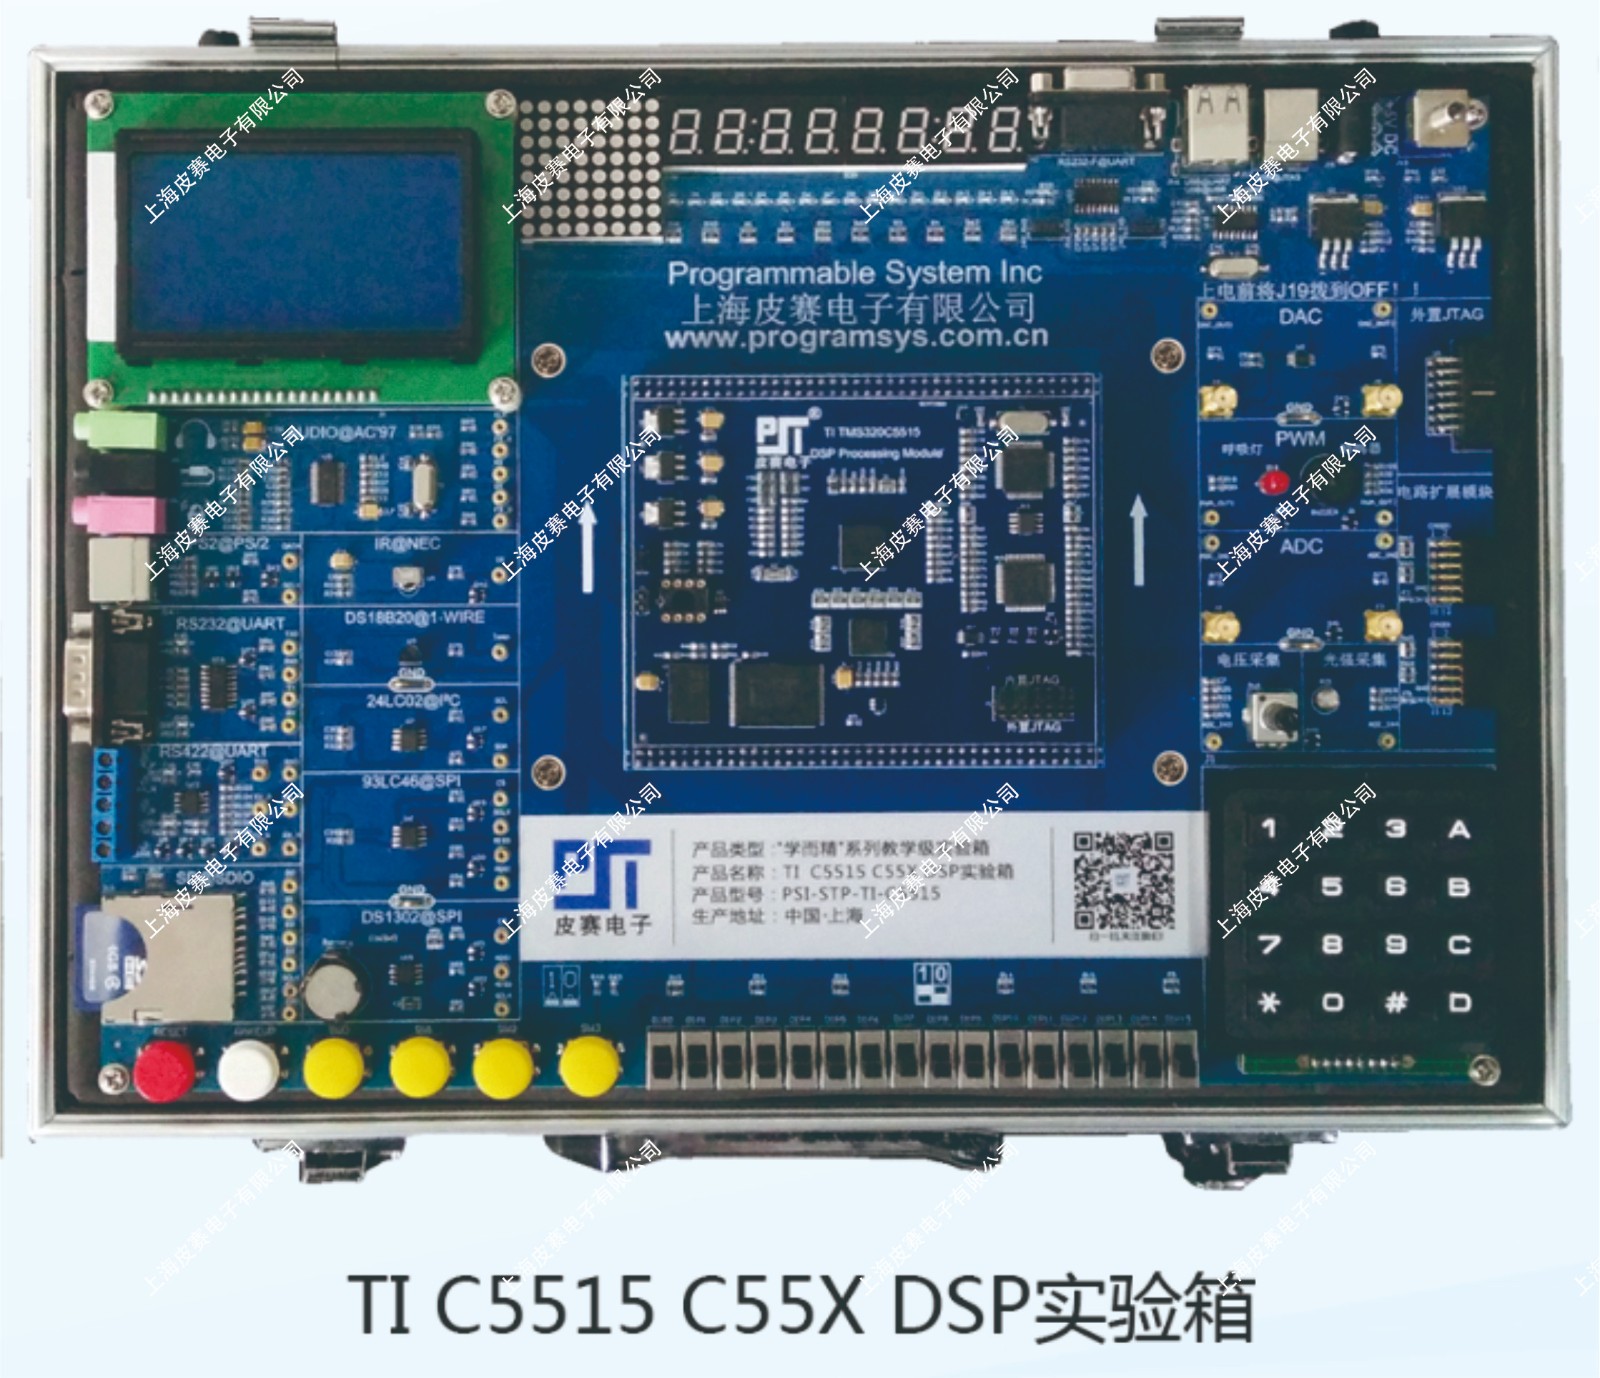 TI C5515 C55X DSP实验箱